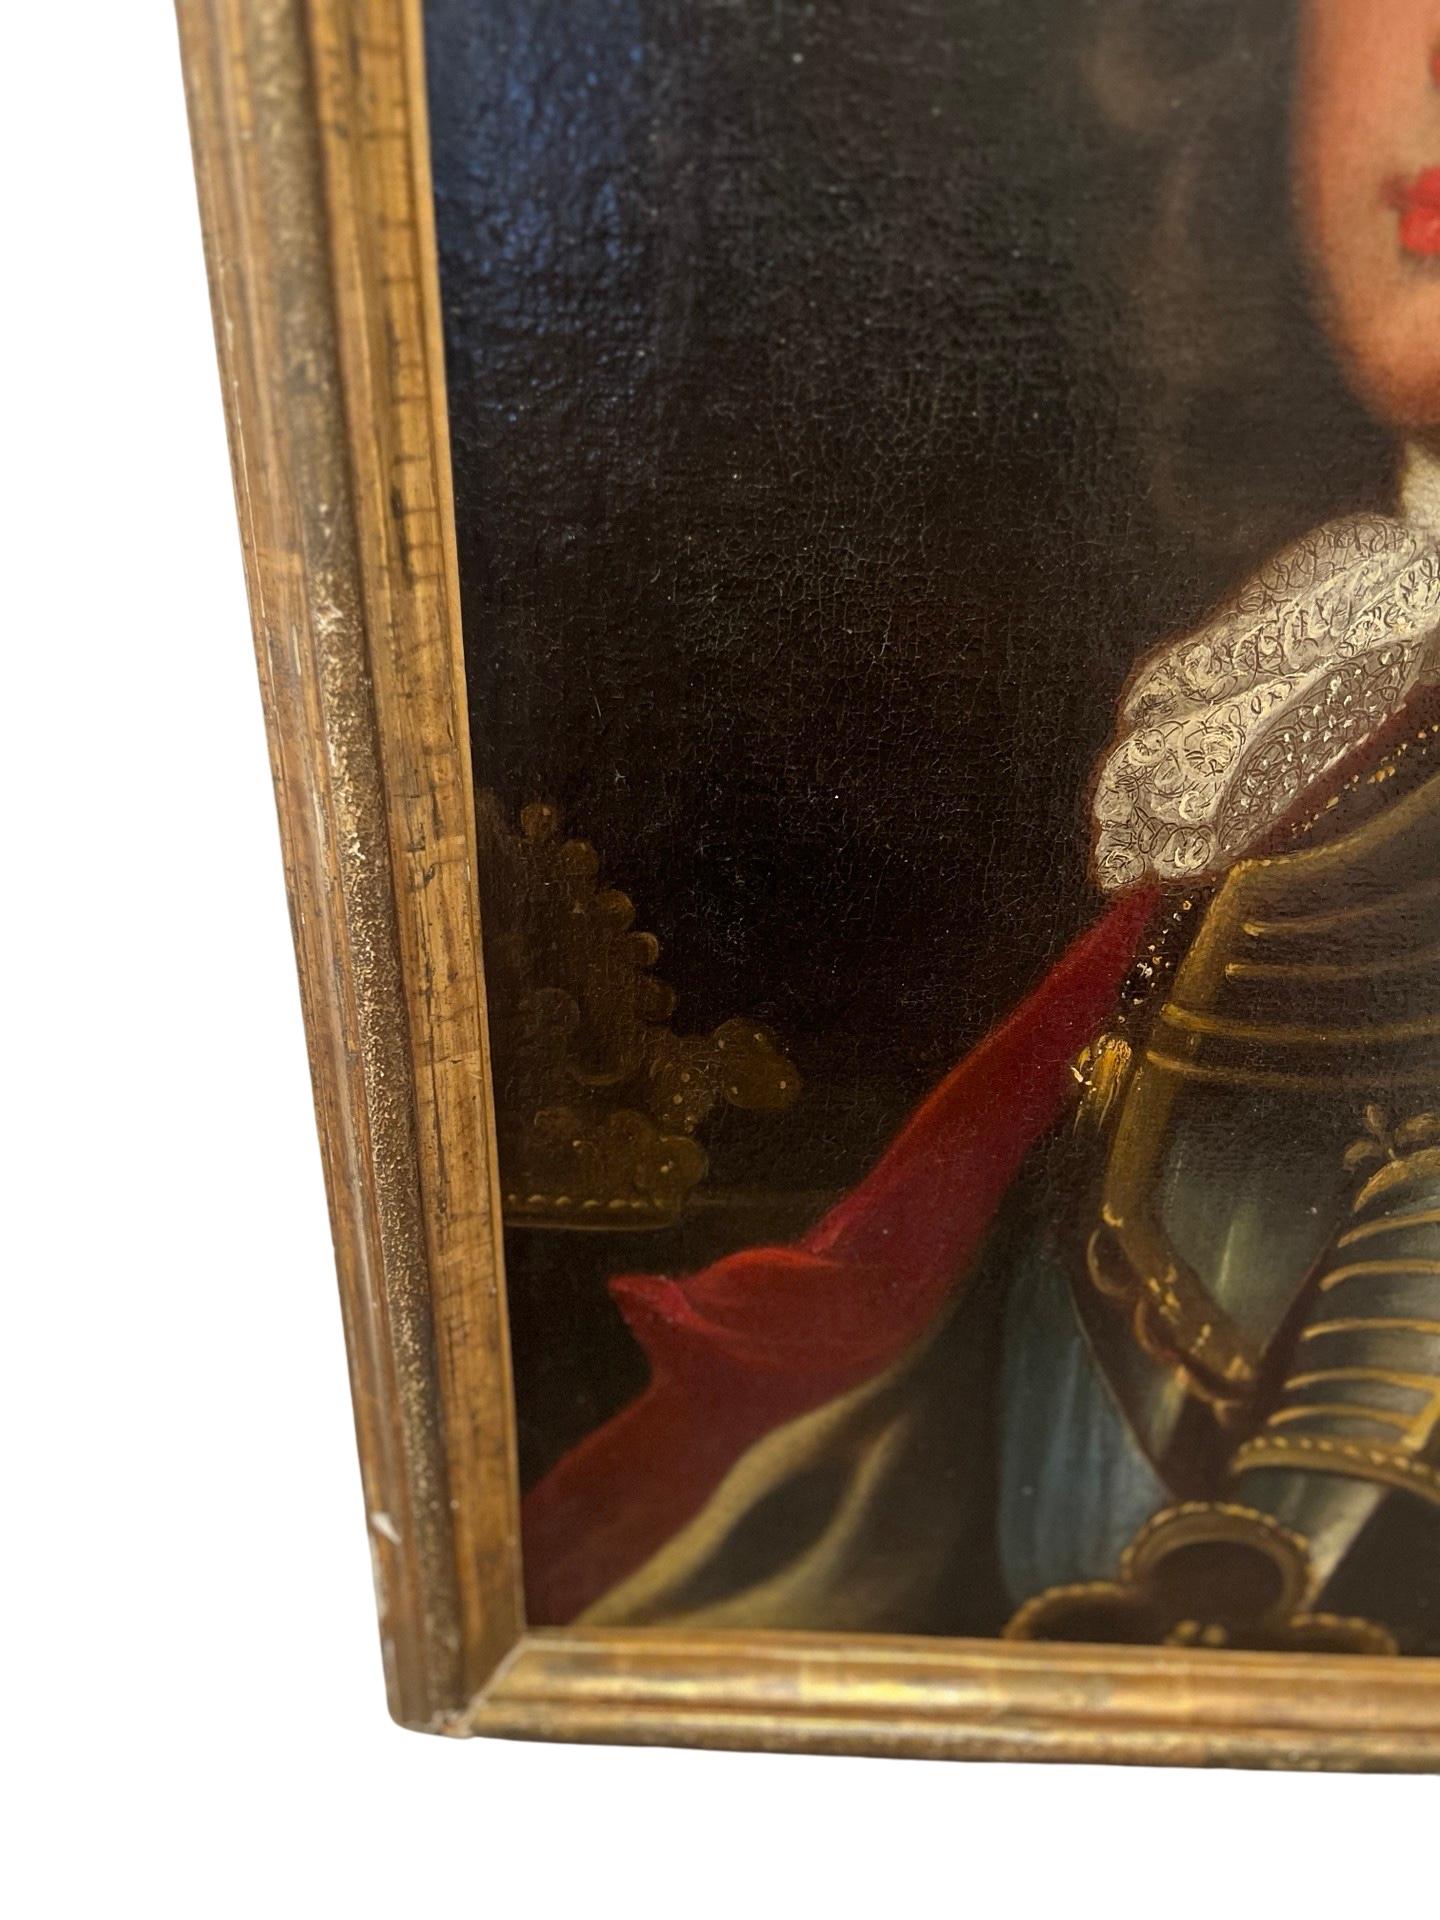 Französische Schule, 18. Jahrhundert. Gemälde in Öl auf Leinwand in einem antiken Rahmen aus Goldholz. Nicht signiert. 

Ein Porträtgemälde aus dem 18. Jahrhundert, das den jungen Philipp V. oder zu dieser Zeit Herzog von Anjou zeigt. Er trug eine